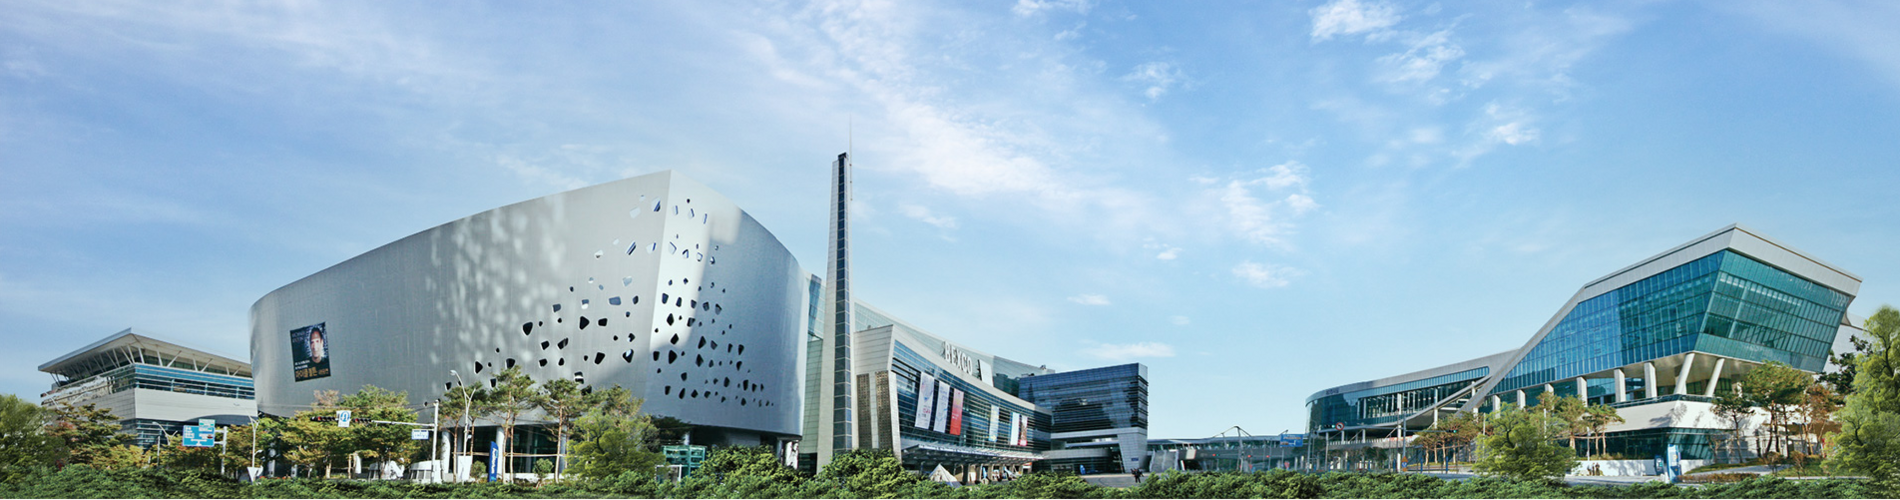 BUSAN exhibiton center, Korea